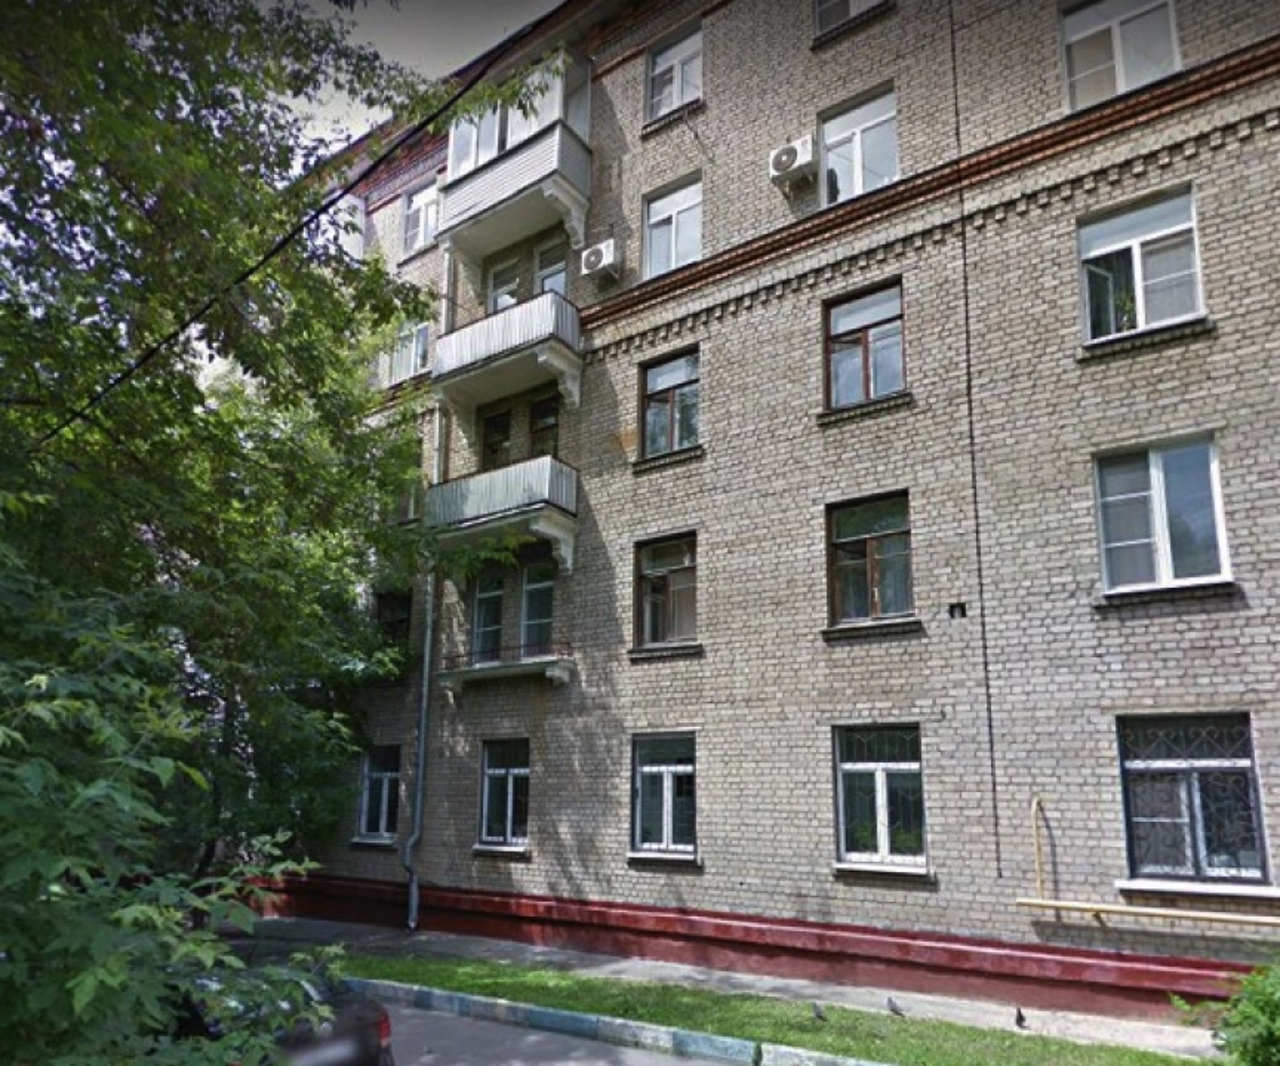 Продам квартиру в Москве по адресу Каширское шоссе, 56к2, площадь 274 квм Недвижимость Москва (Россия)  Район отличается развитой социальной инфраструктурой, удобной транспортной доступностью до центра города и других районов столицы